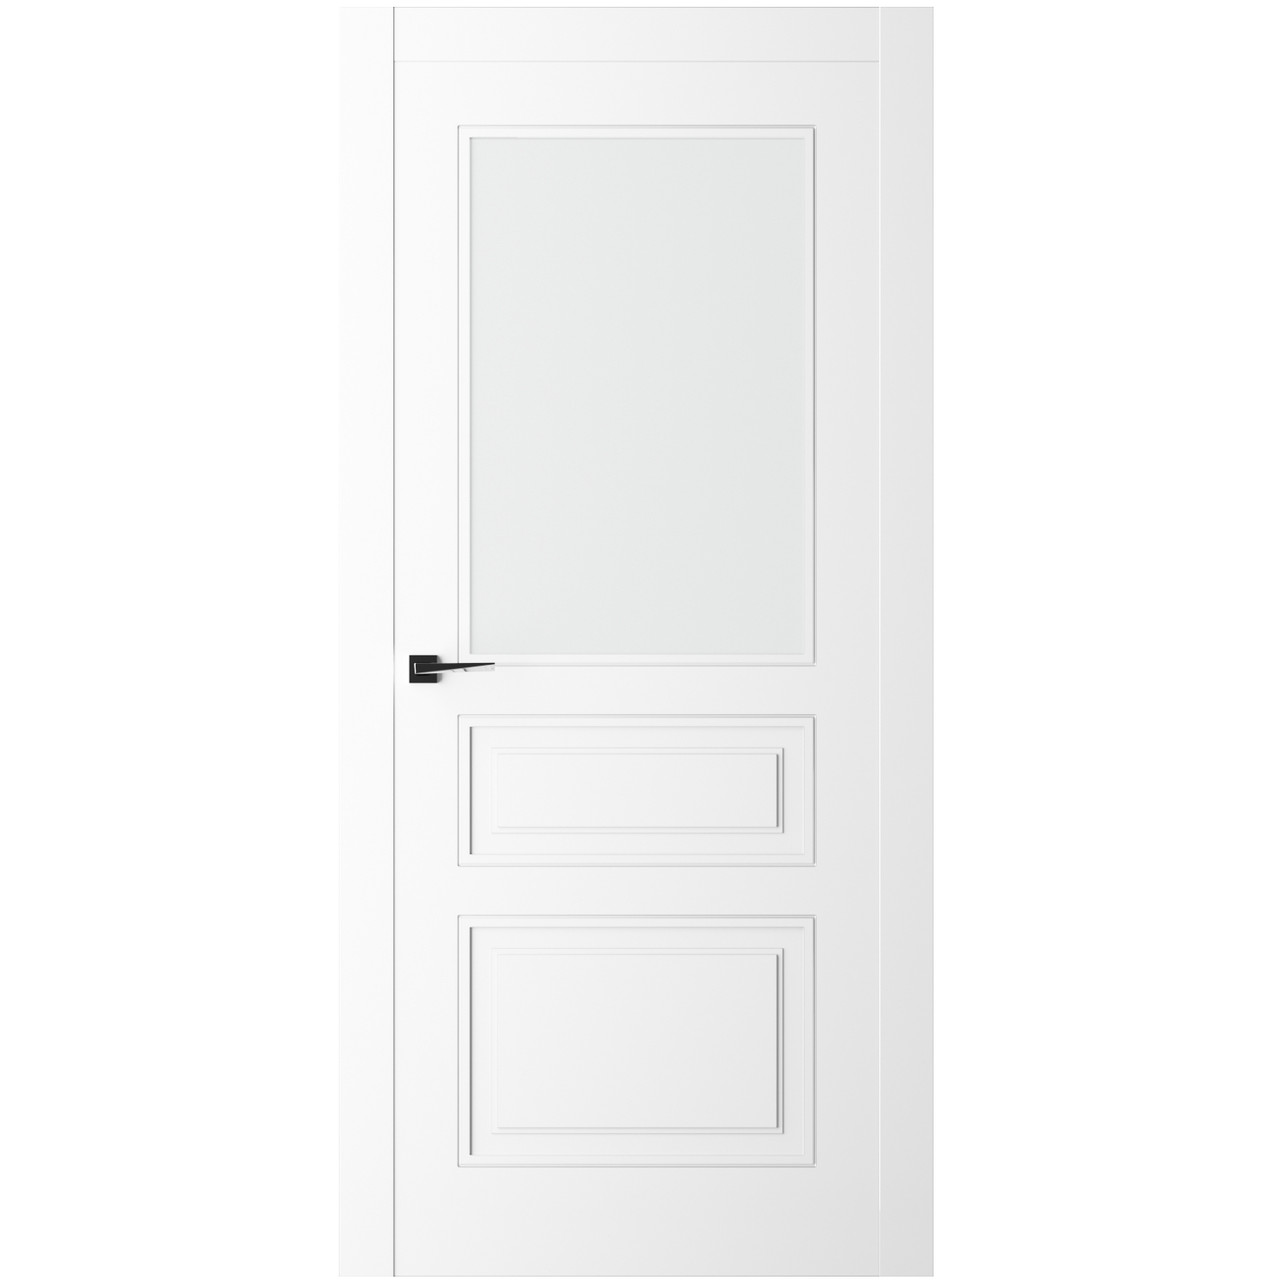 Дверь межкомнатная Ликорн Плоско-фрезерованная ДКПФГ.3 2000*800*40мм (без замков и петель, с телеск. коробкой